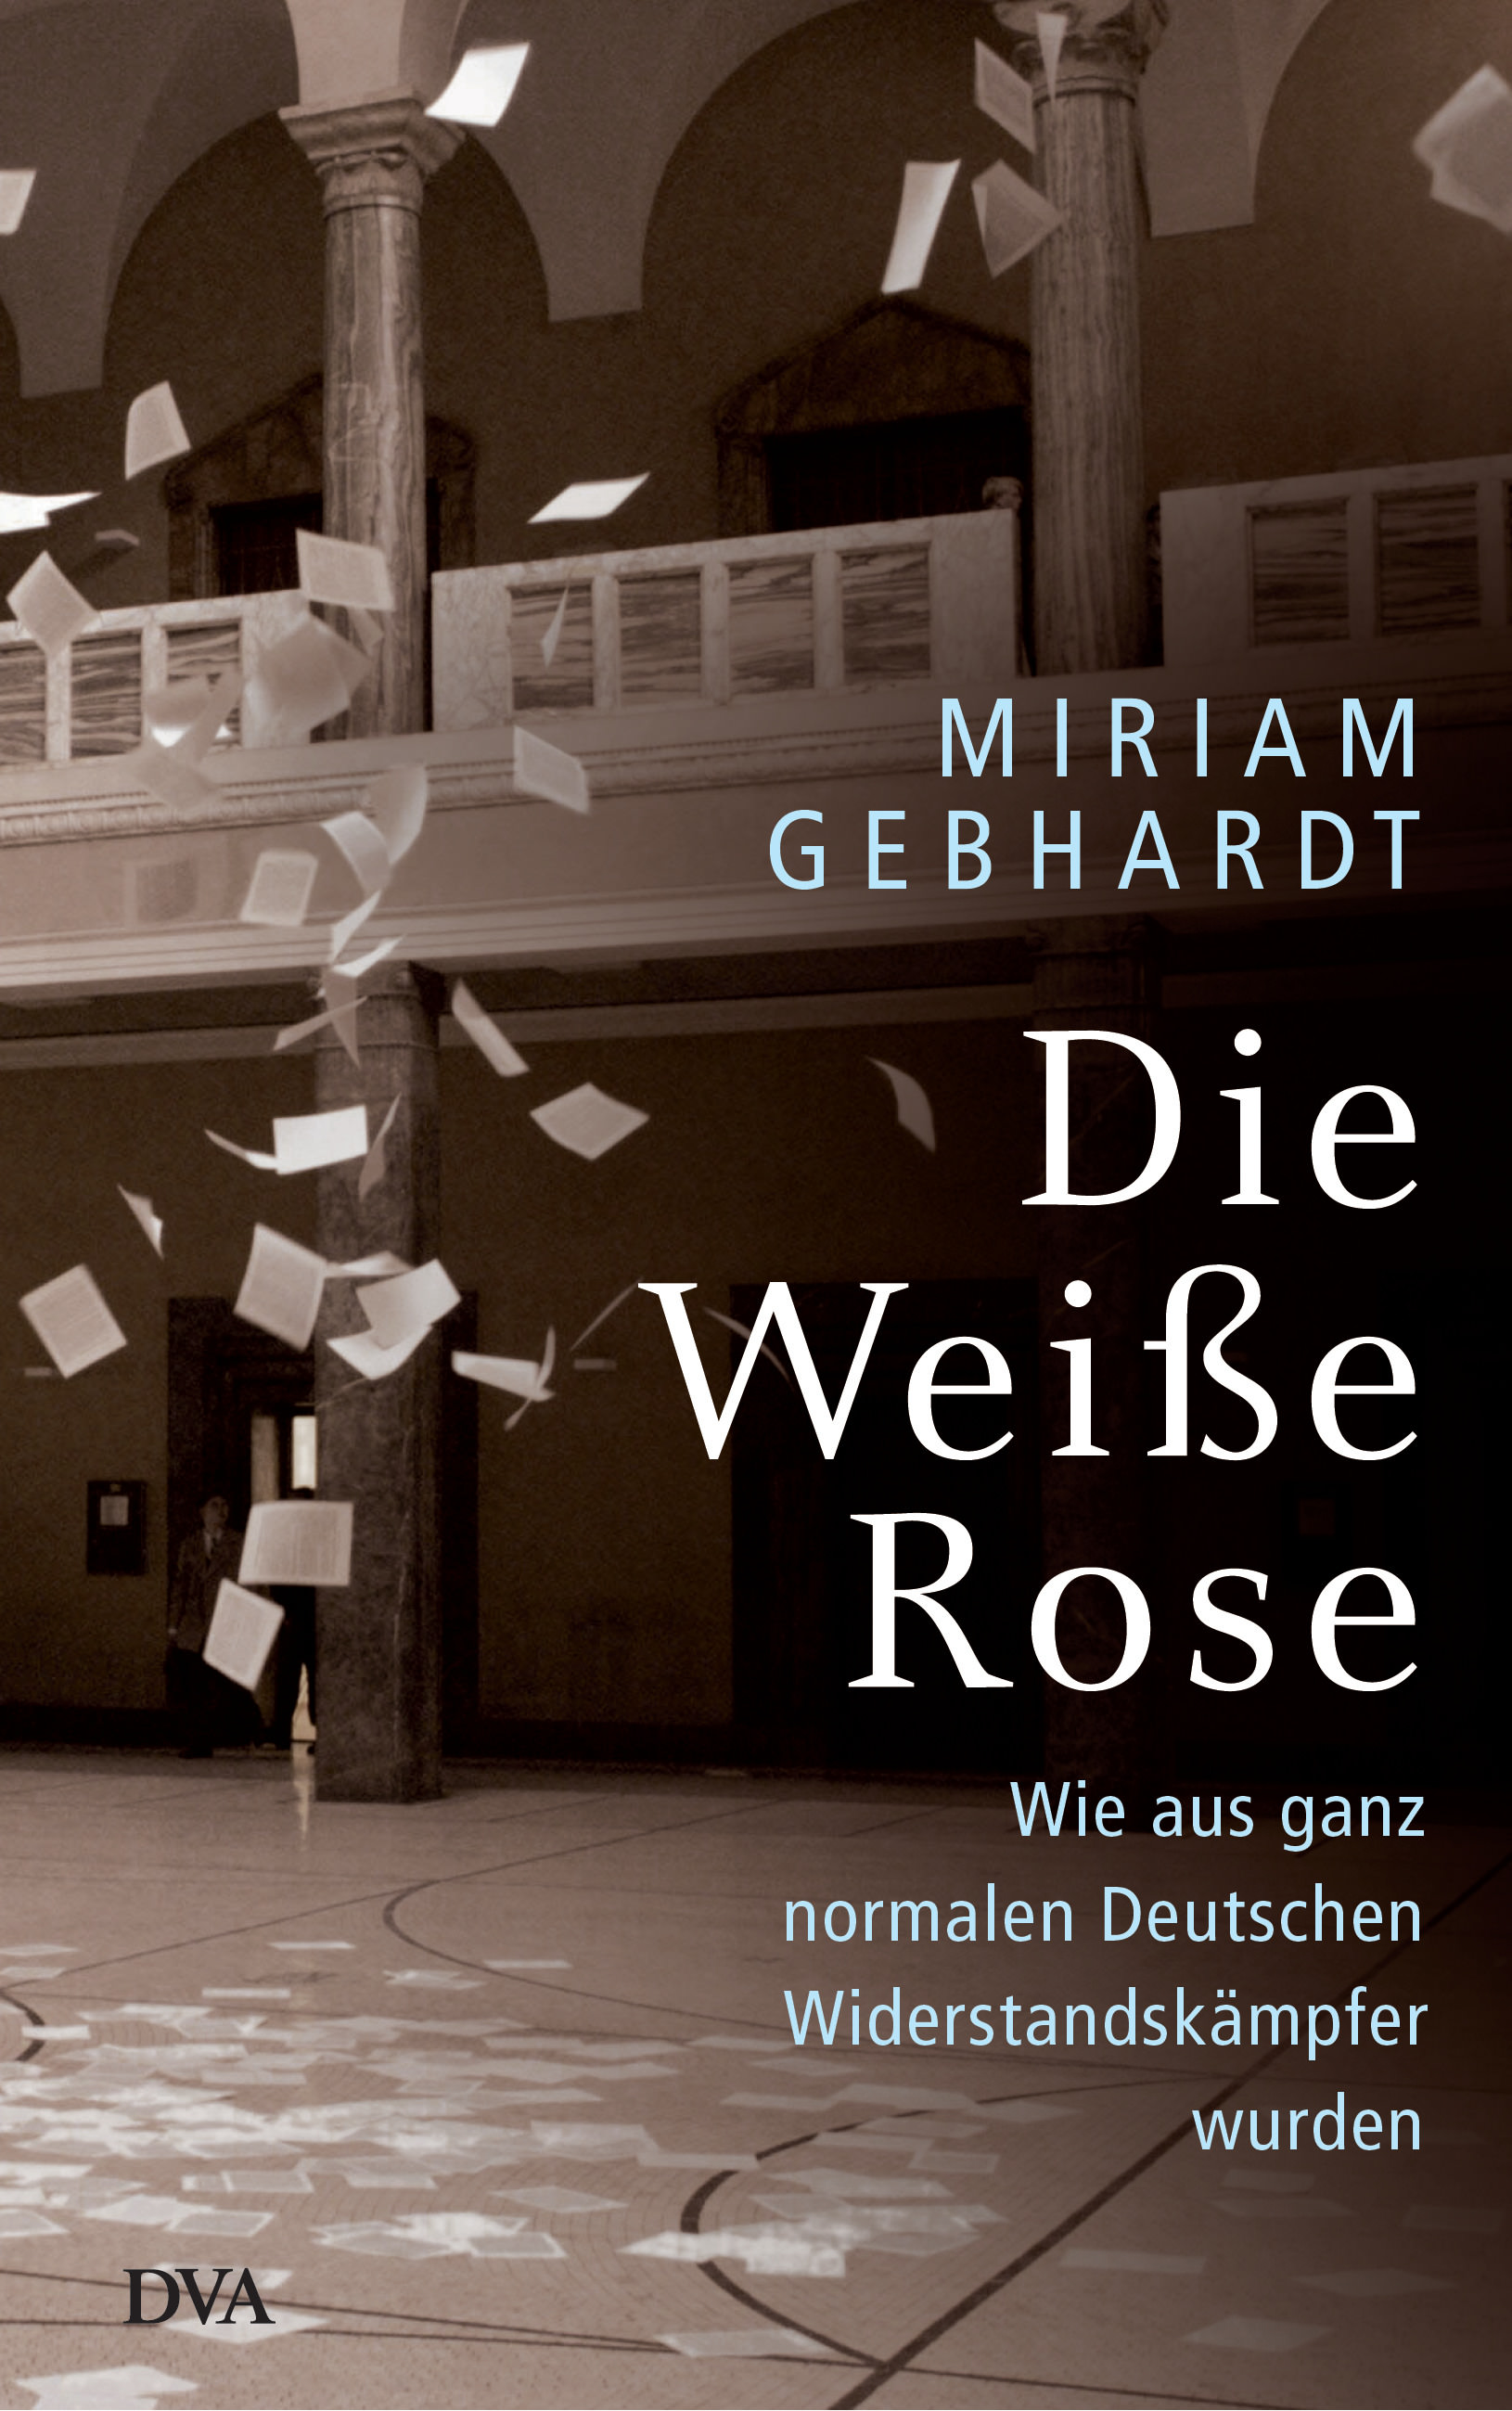 Buchcover: Miriam Gebhardt: Die Weiße Rose. DVA